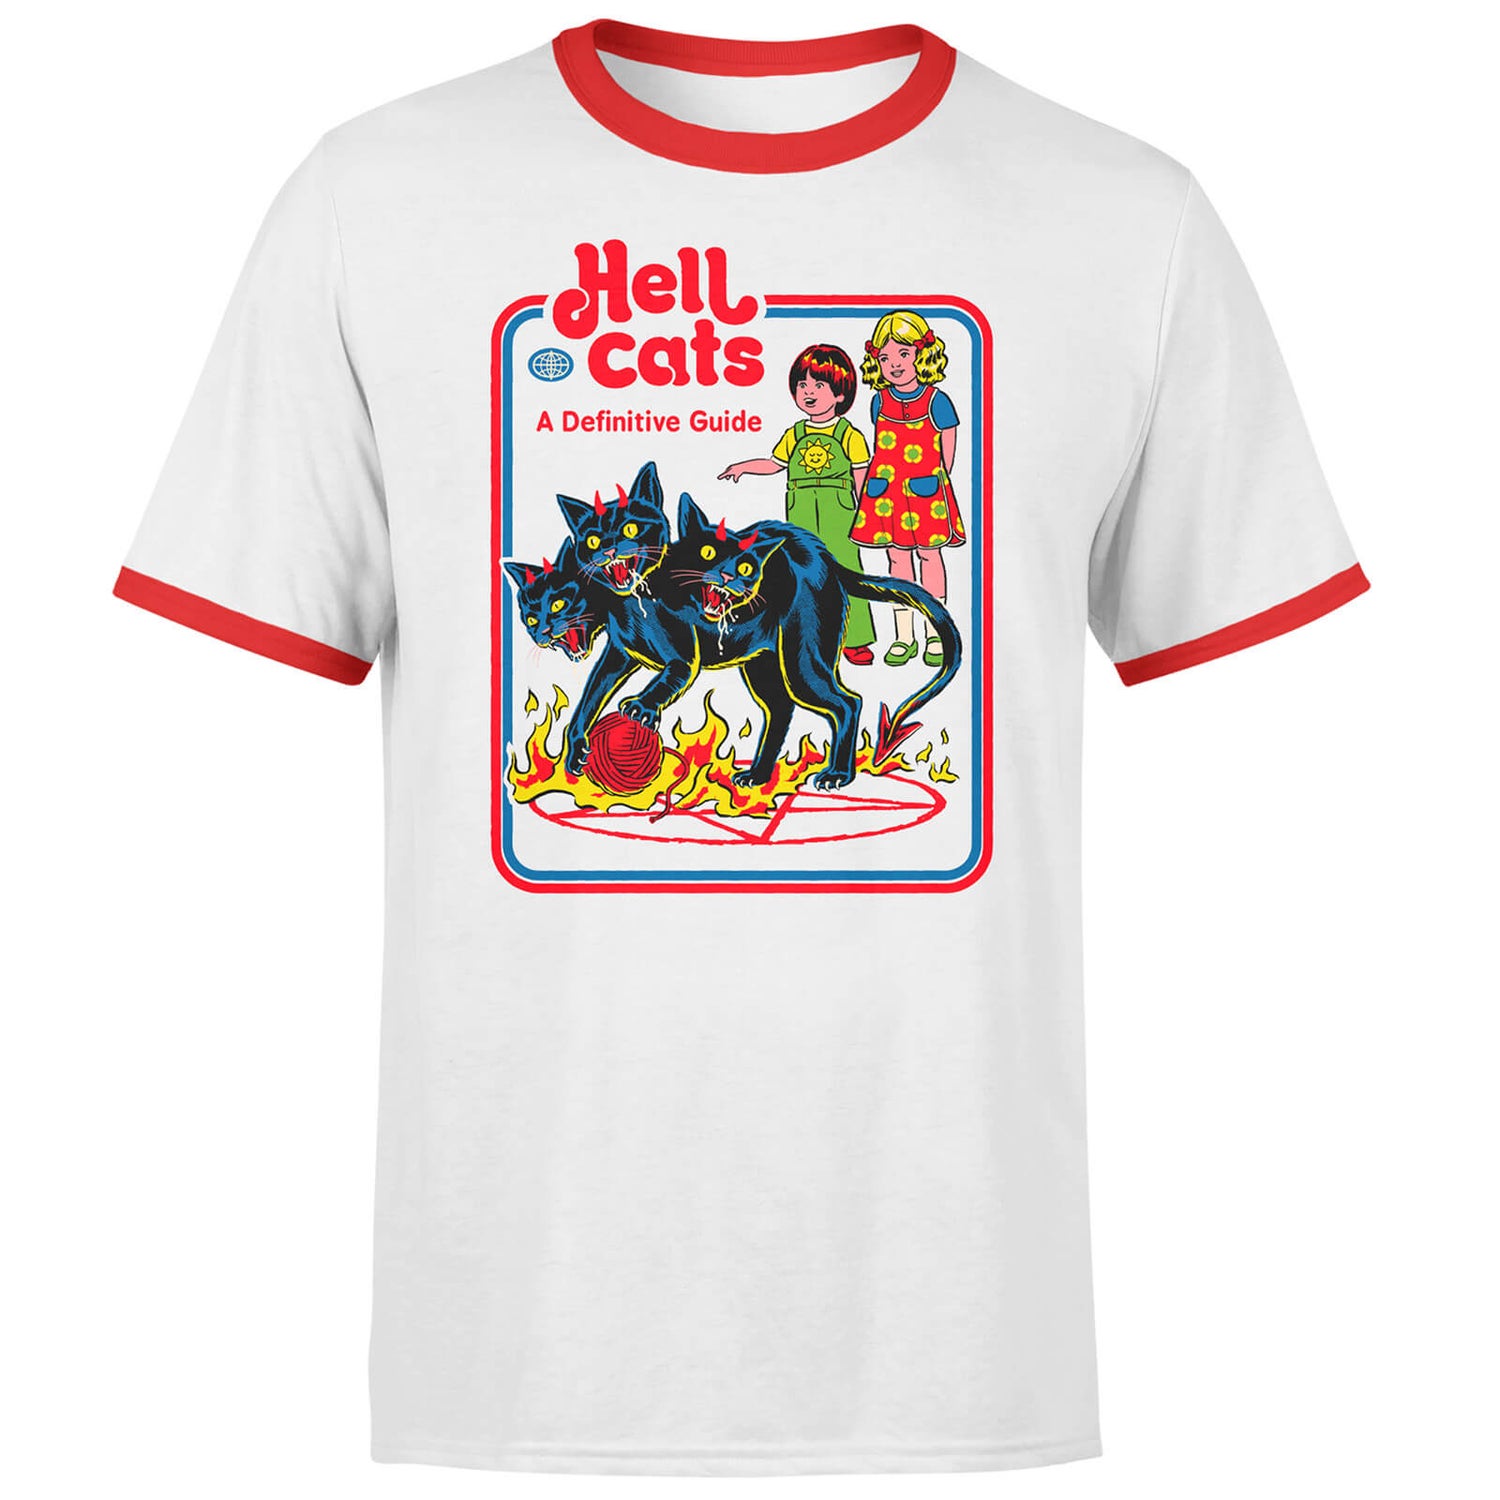 Hell Cats Men's Ringer T-Shirt - White/Red